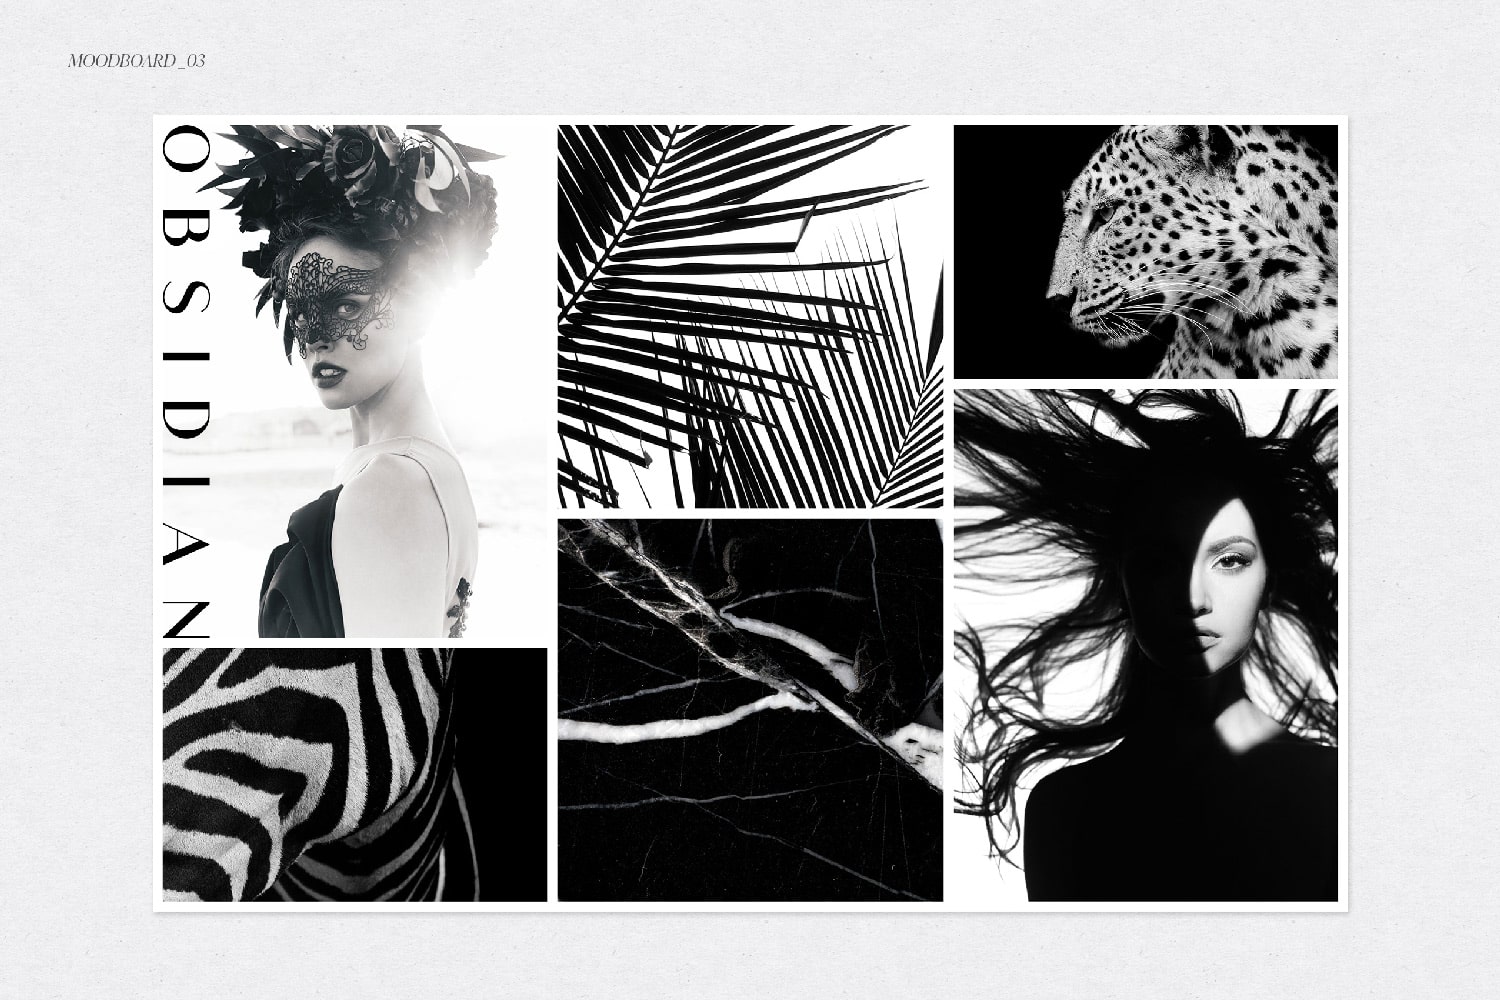 Un Moodboard minimaliste, moderne, féminin, mystérieux et sauvage. Son nom : L'indomptable. Un univers noir et blanc chic et désinvolte.